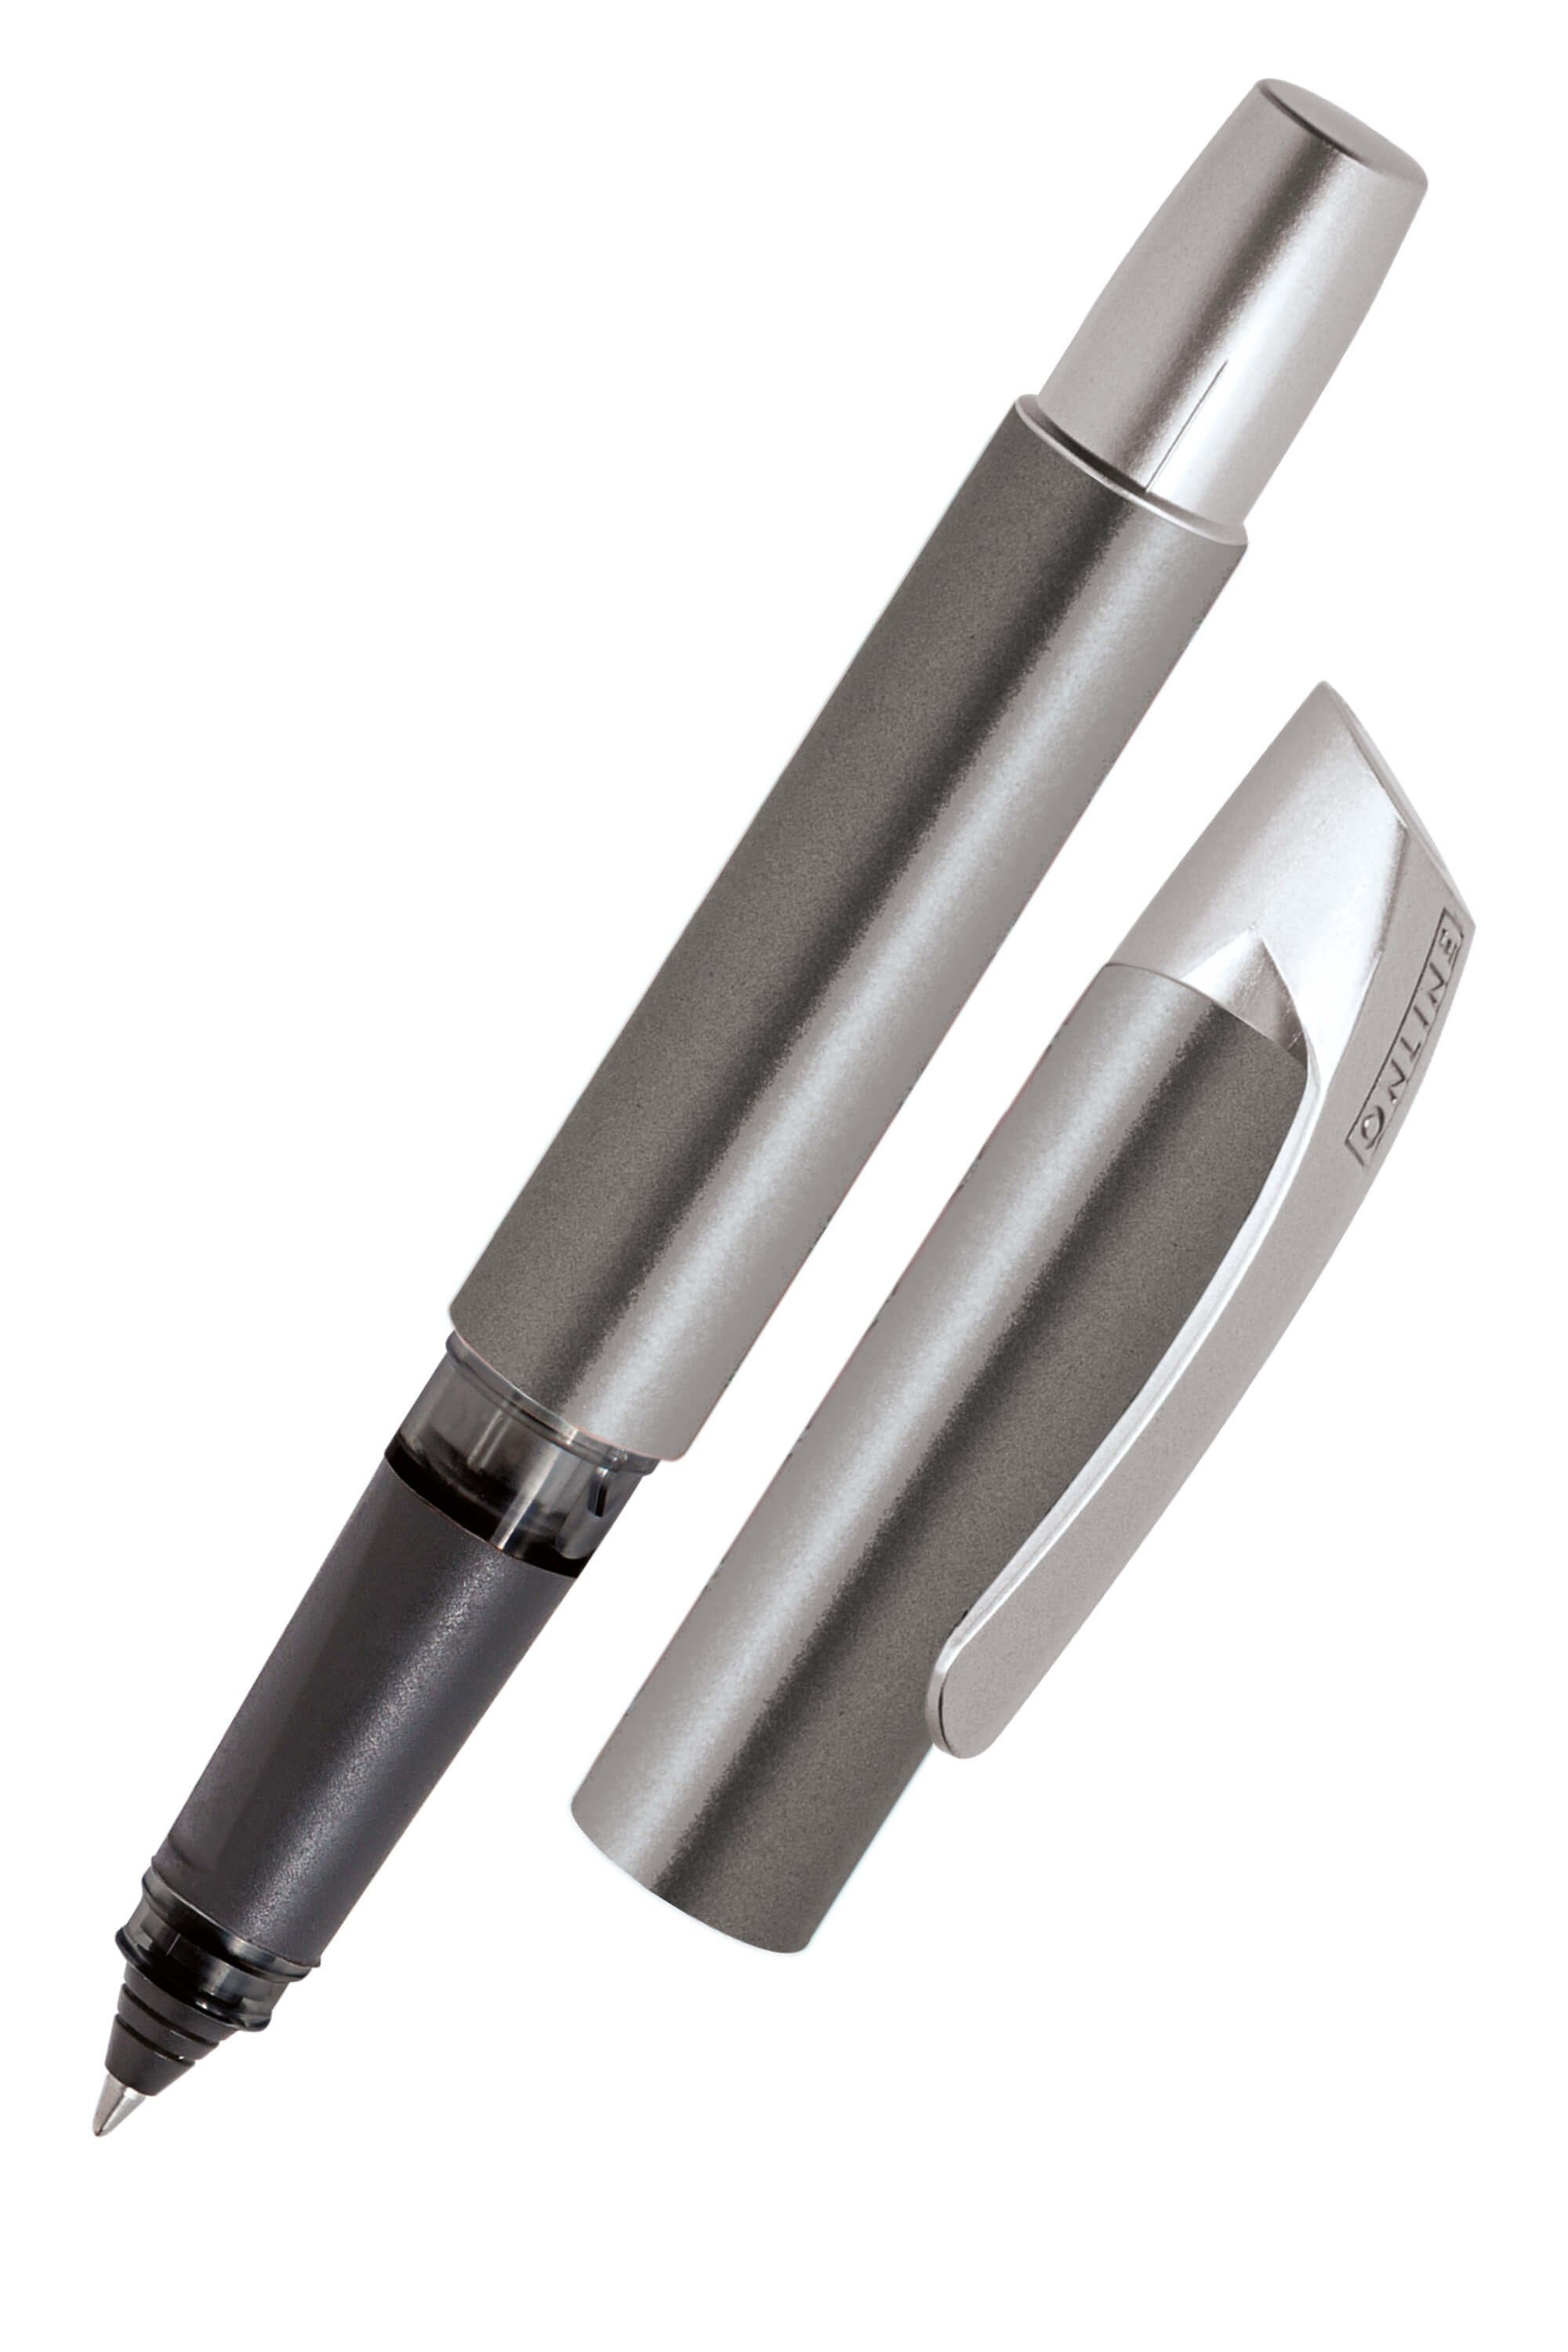 Online Pen Tintenroller Campus Rollerball, ergonomisch, ideal für die Schule, hergestellt in Deutschland Grau